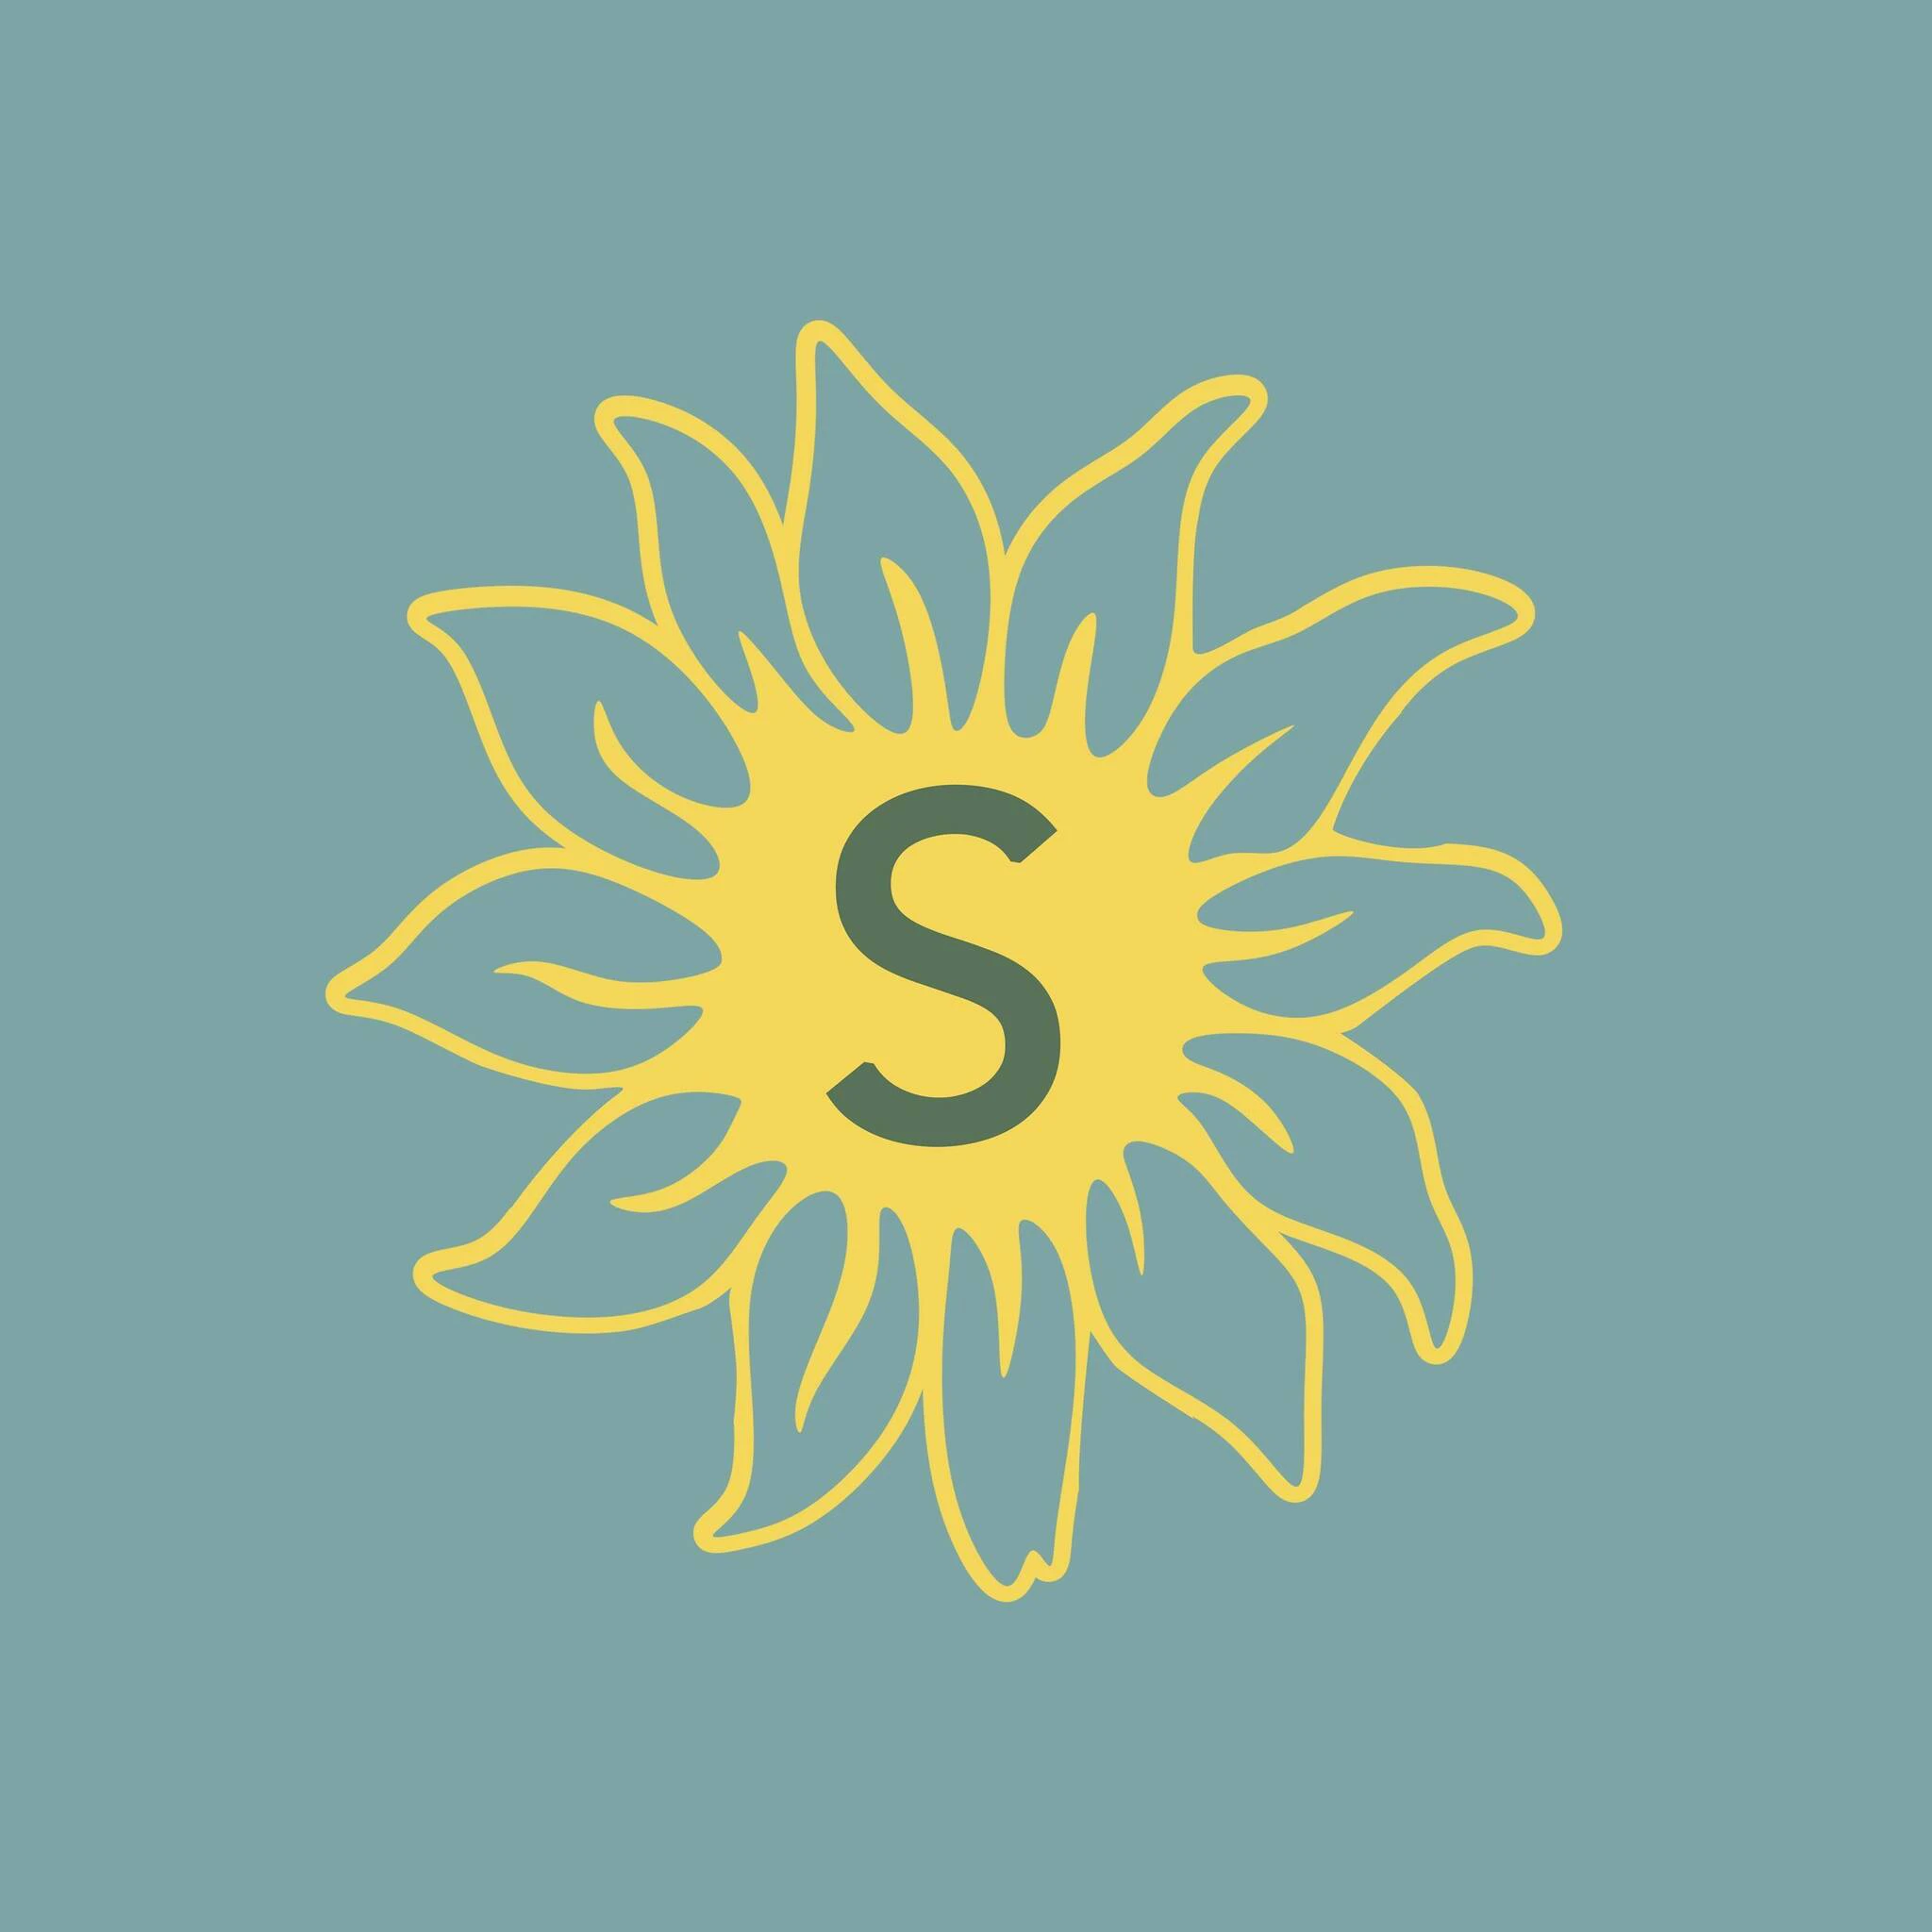  SunHaven promo code